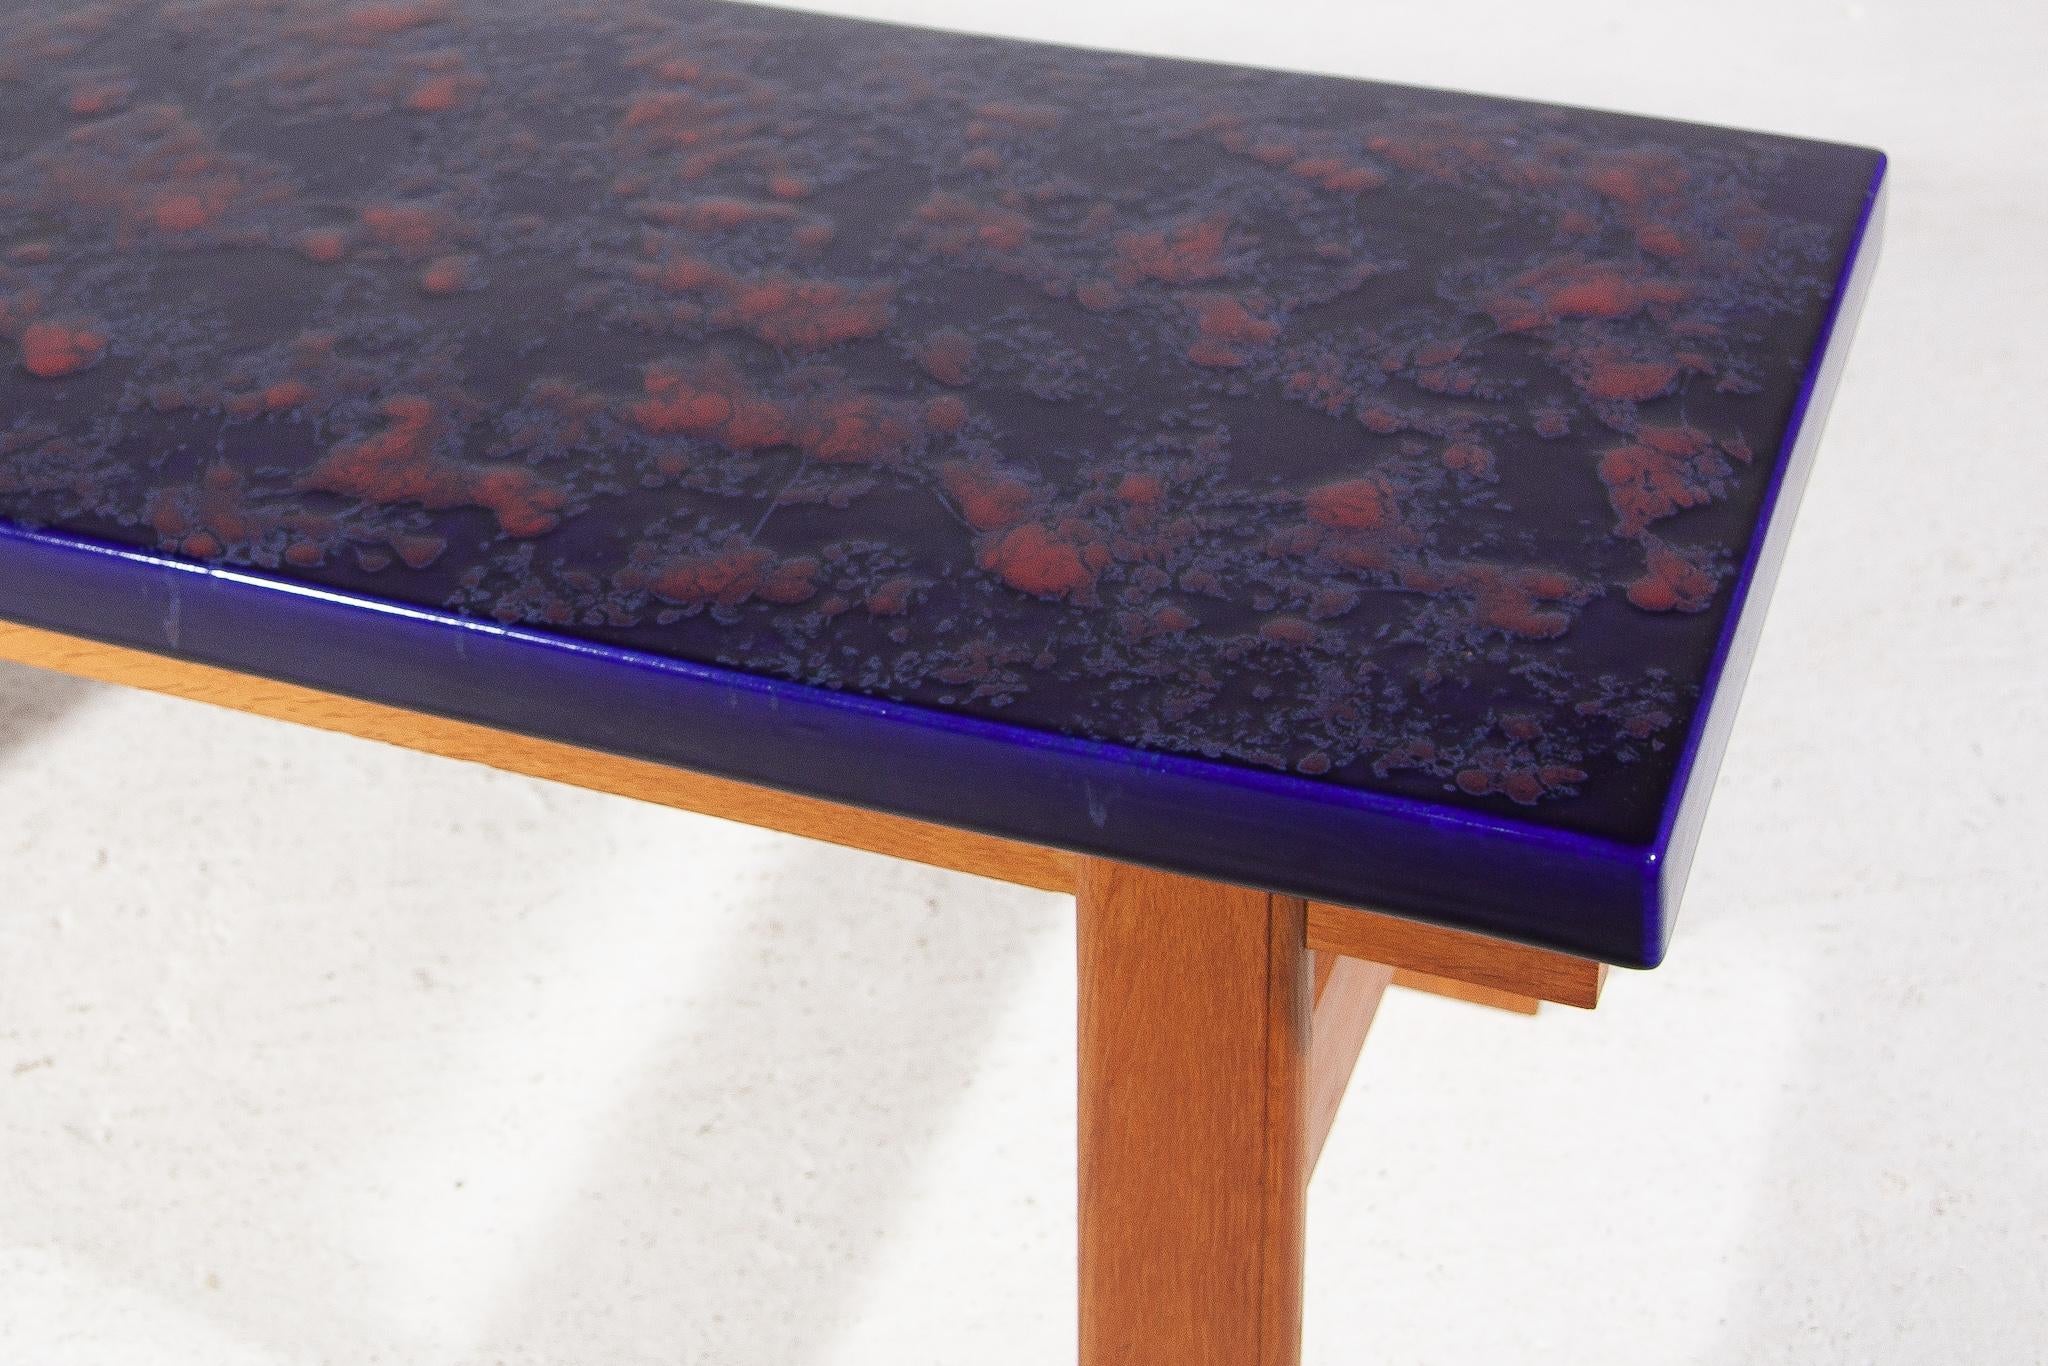 Rare table basse ou table d'appoint originale des années soixante-dix, composée d'un grand carreau de céramique émaillé d'un bleu vif avec des accents contrastés de taches orange qui font de la table un bel objet chaleureux dans votre intérieur. La